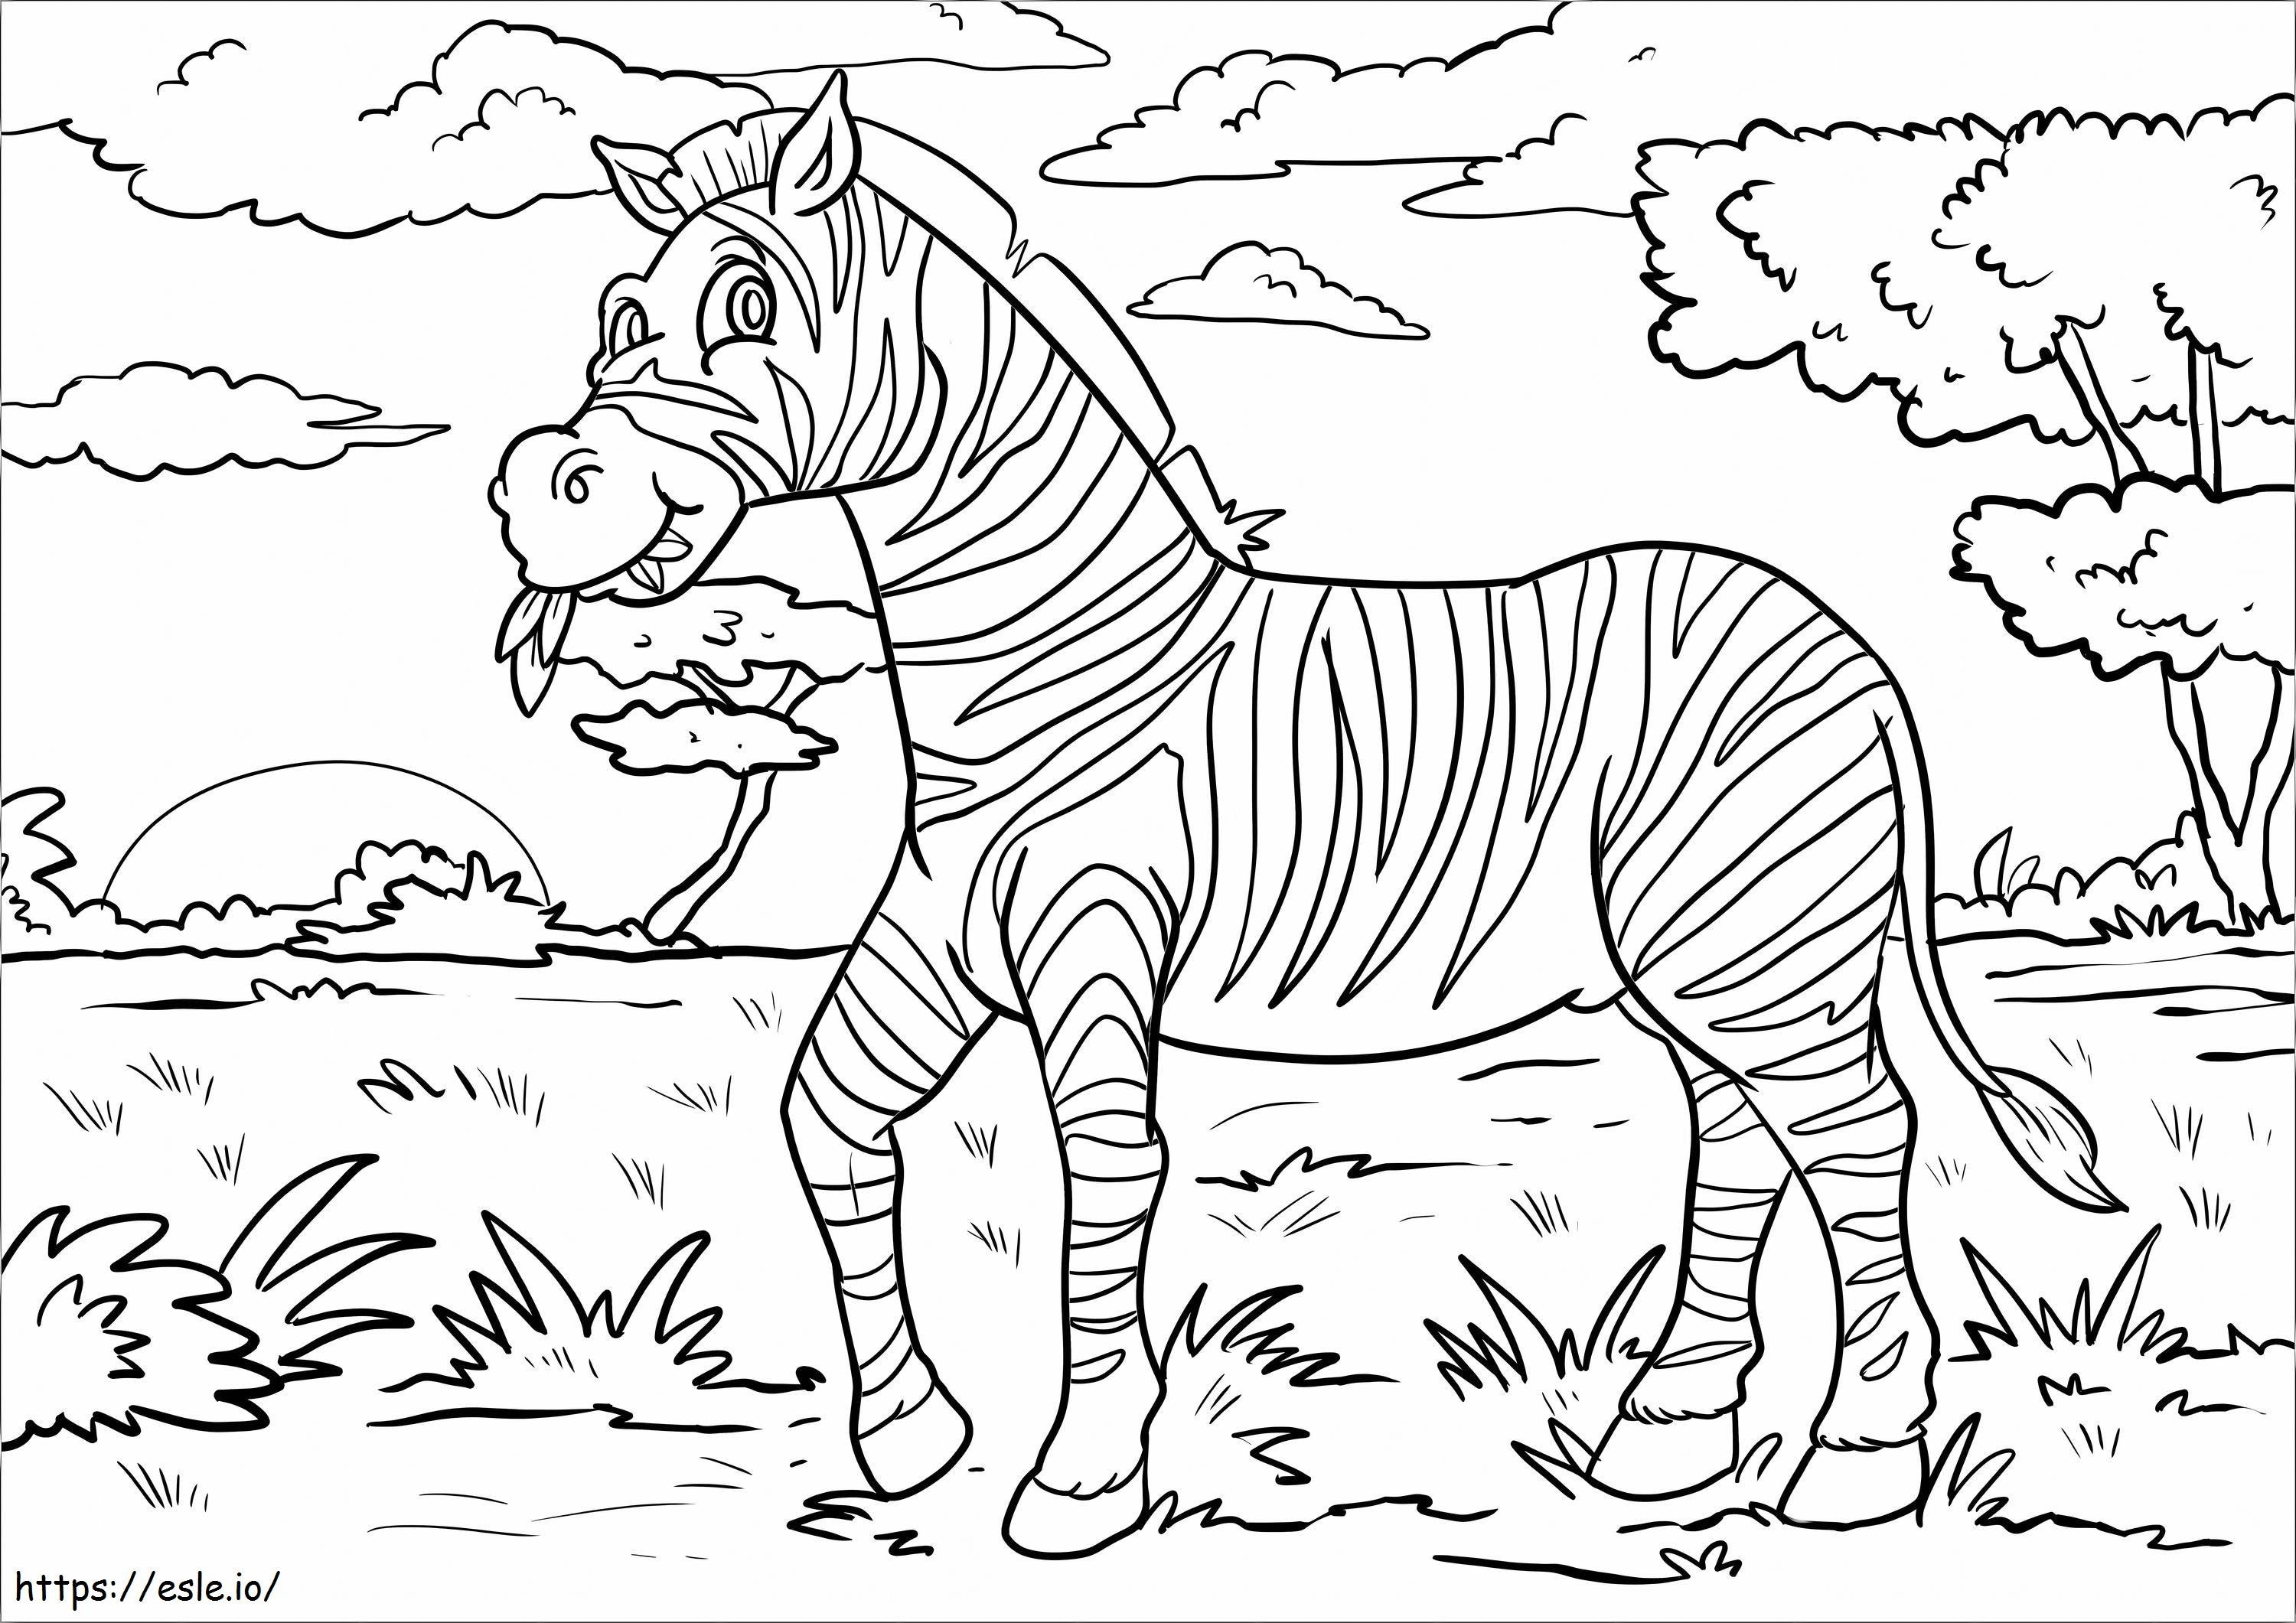 Zebra mâncând iarbă de colorat